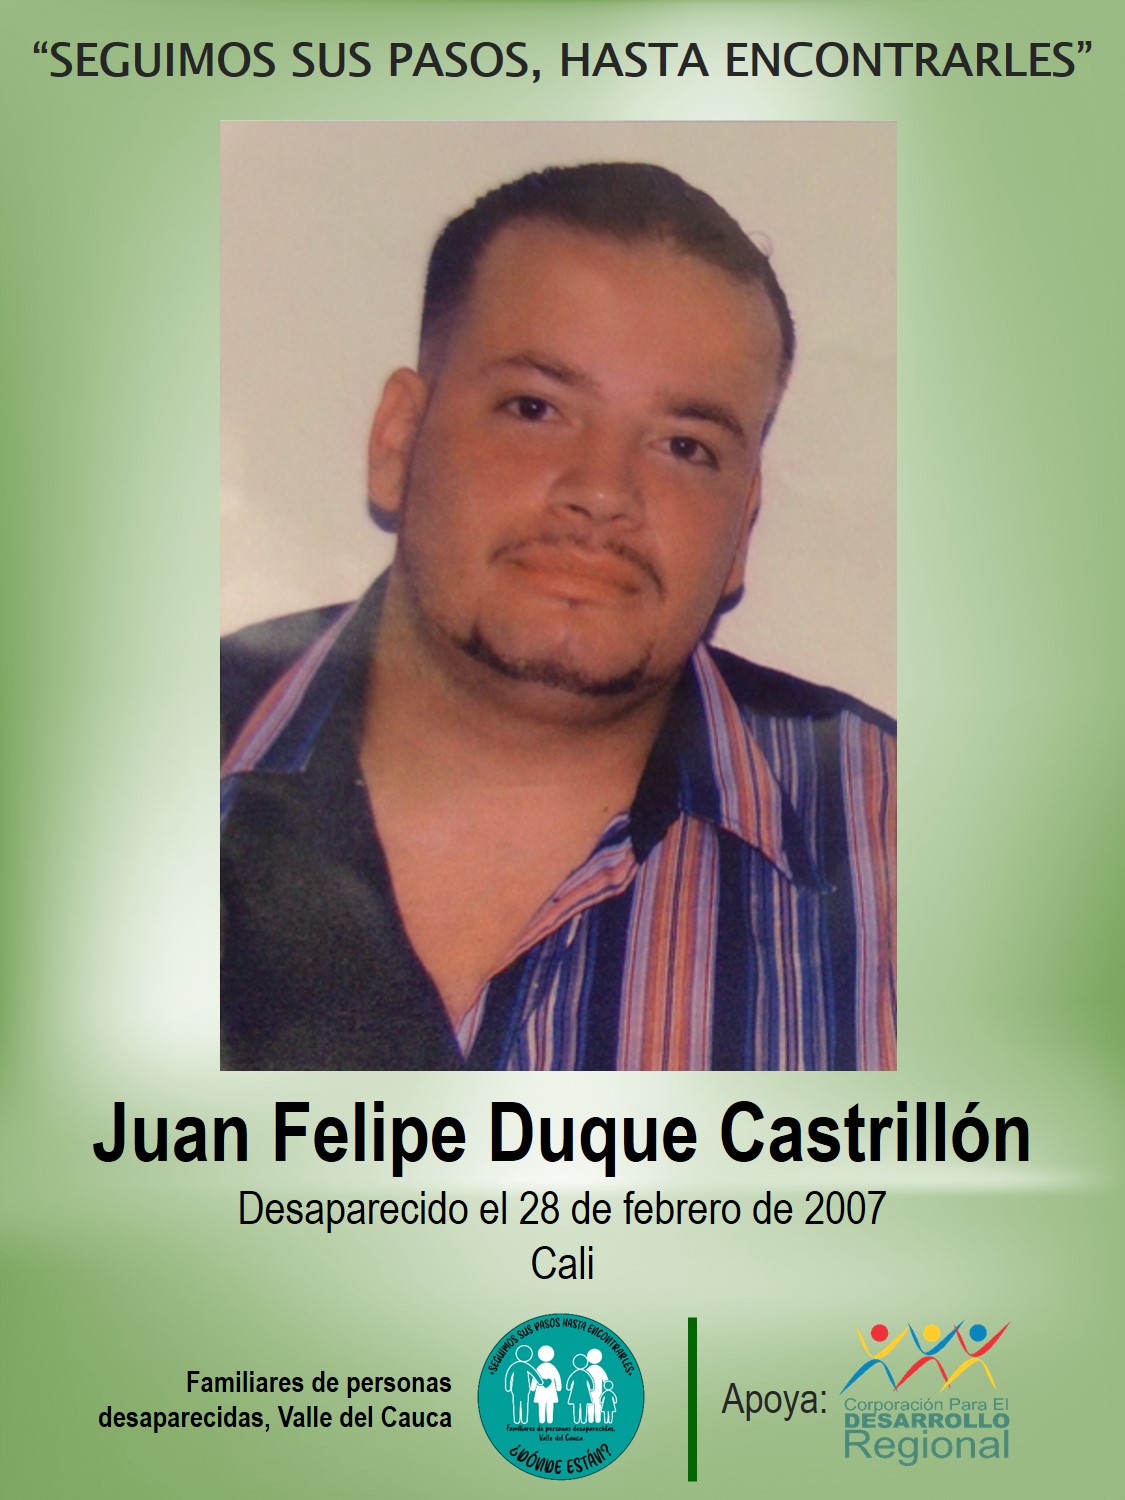 Juan Felipe Duque Castrillón